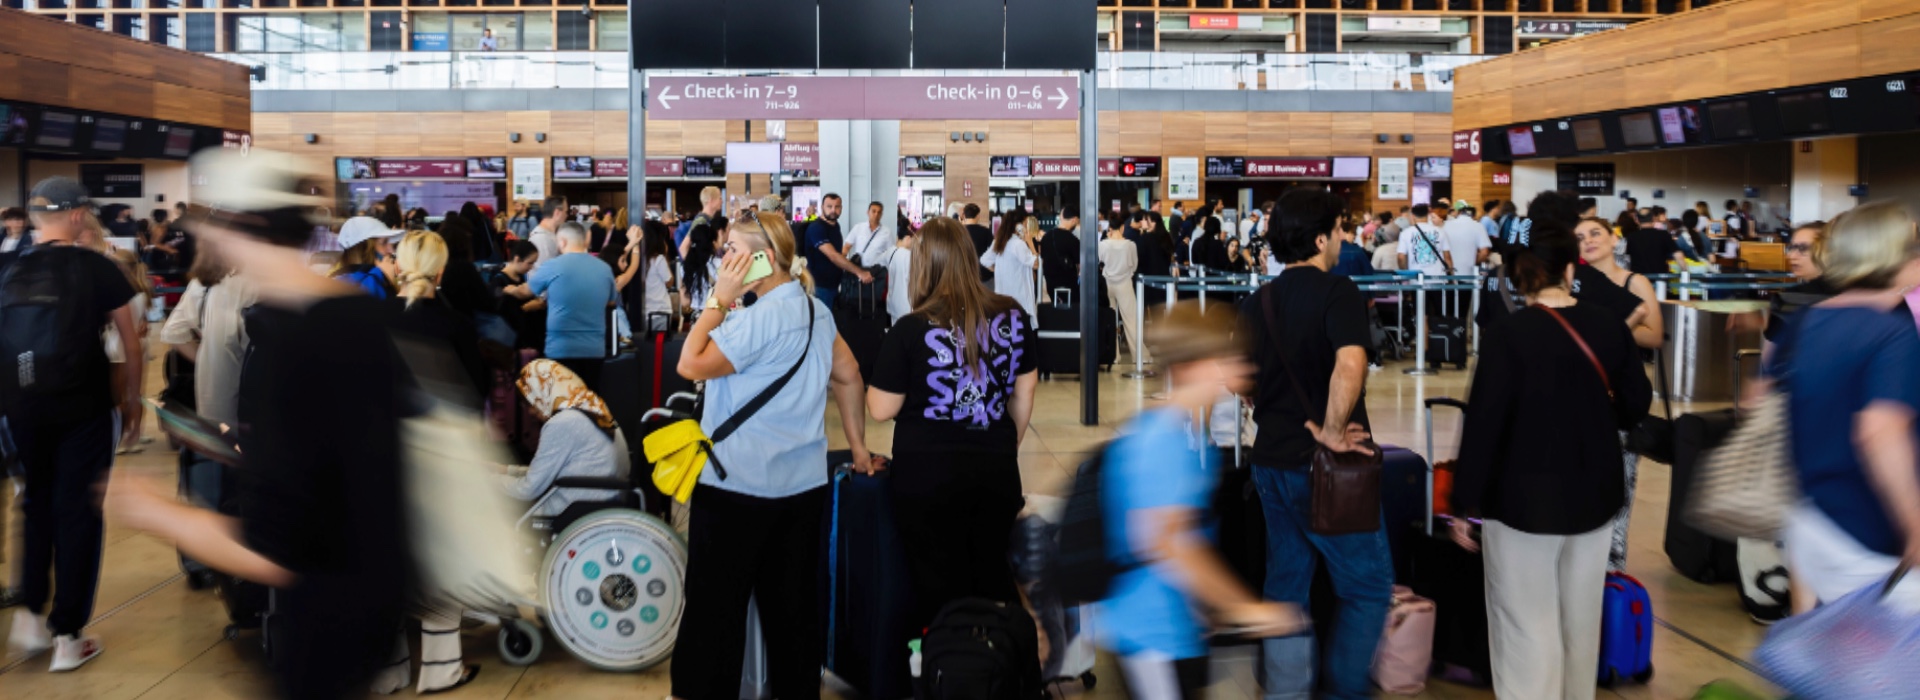 Un guasto informatico globale paralizza aeroporti e banche